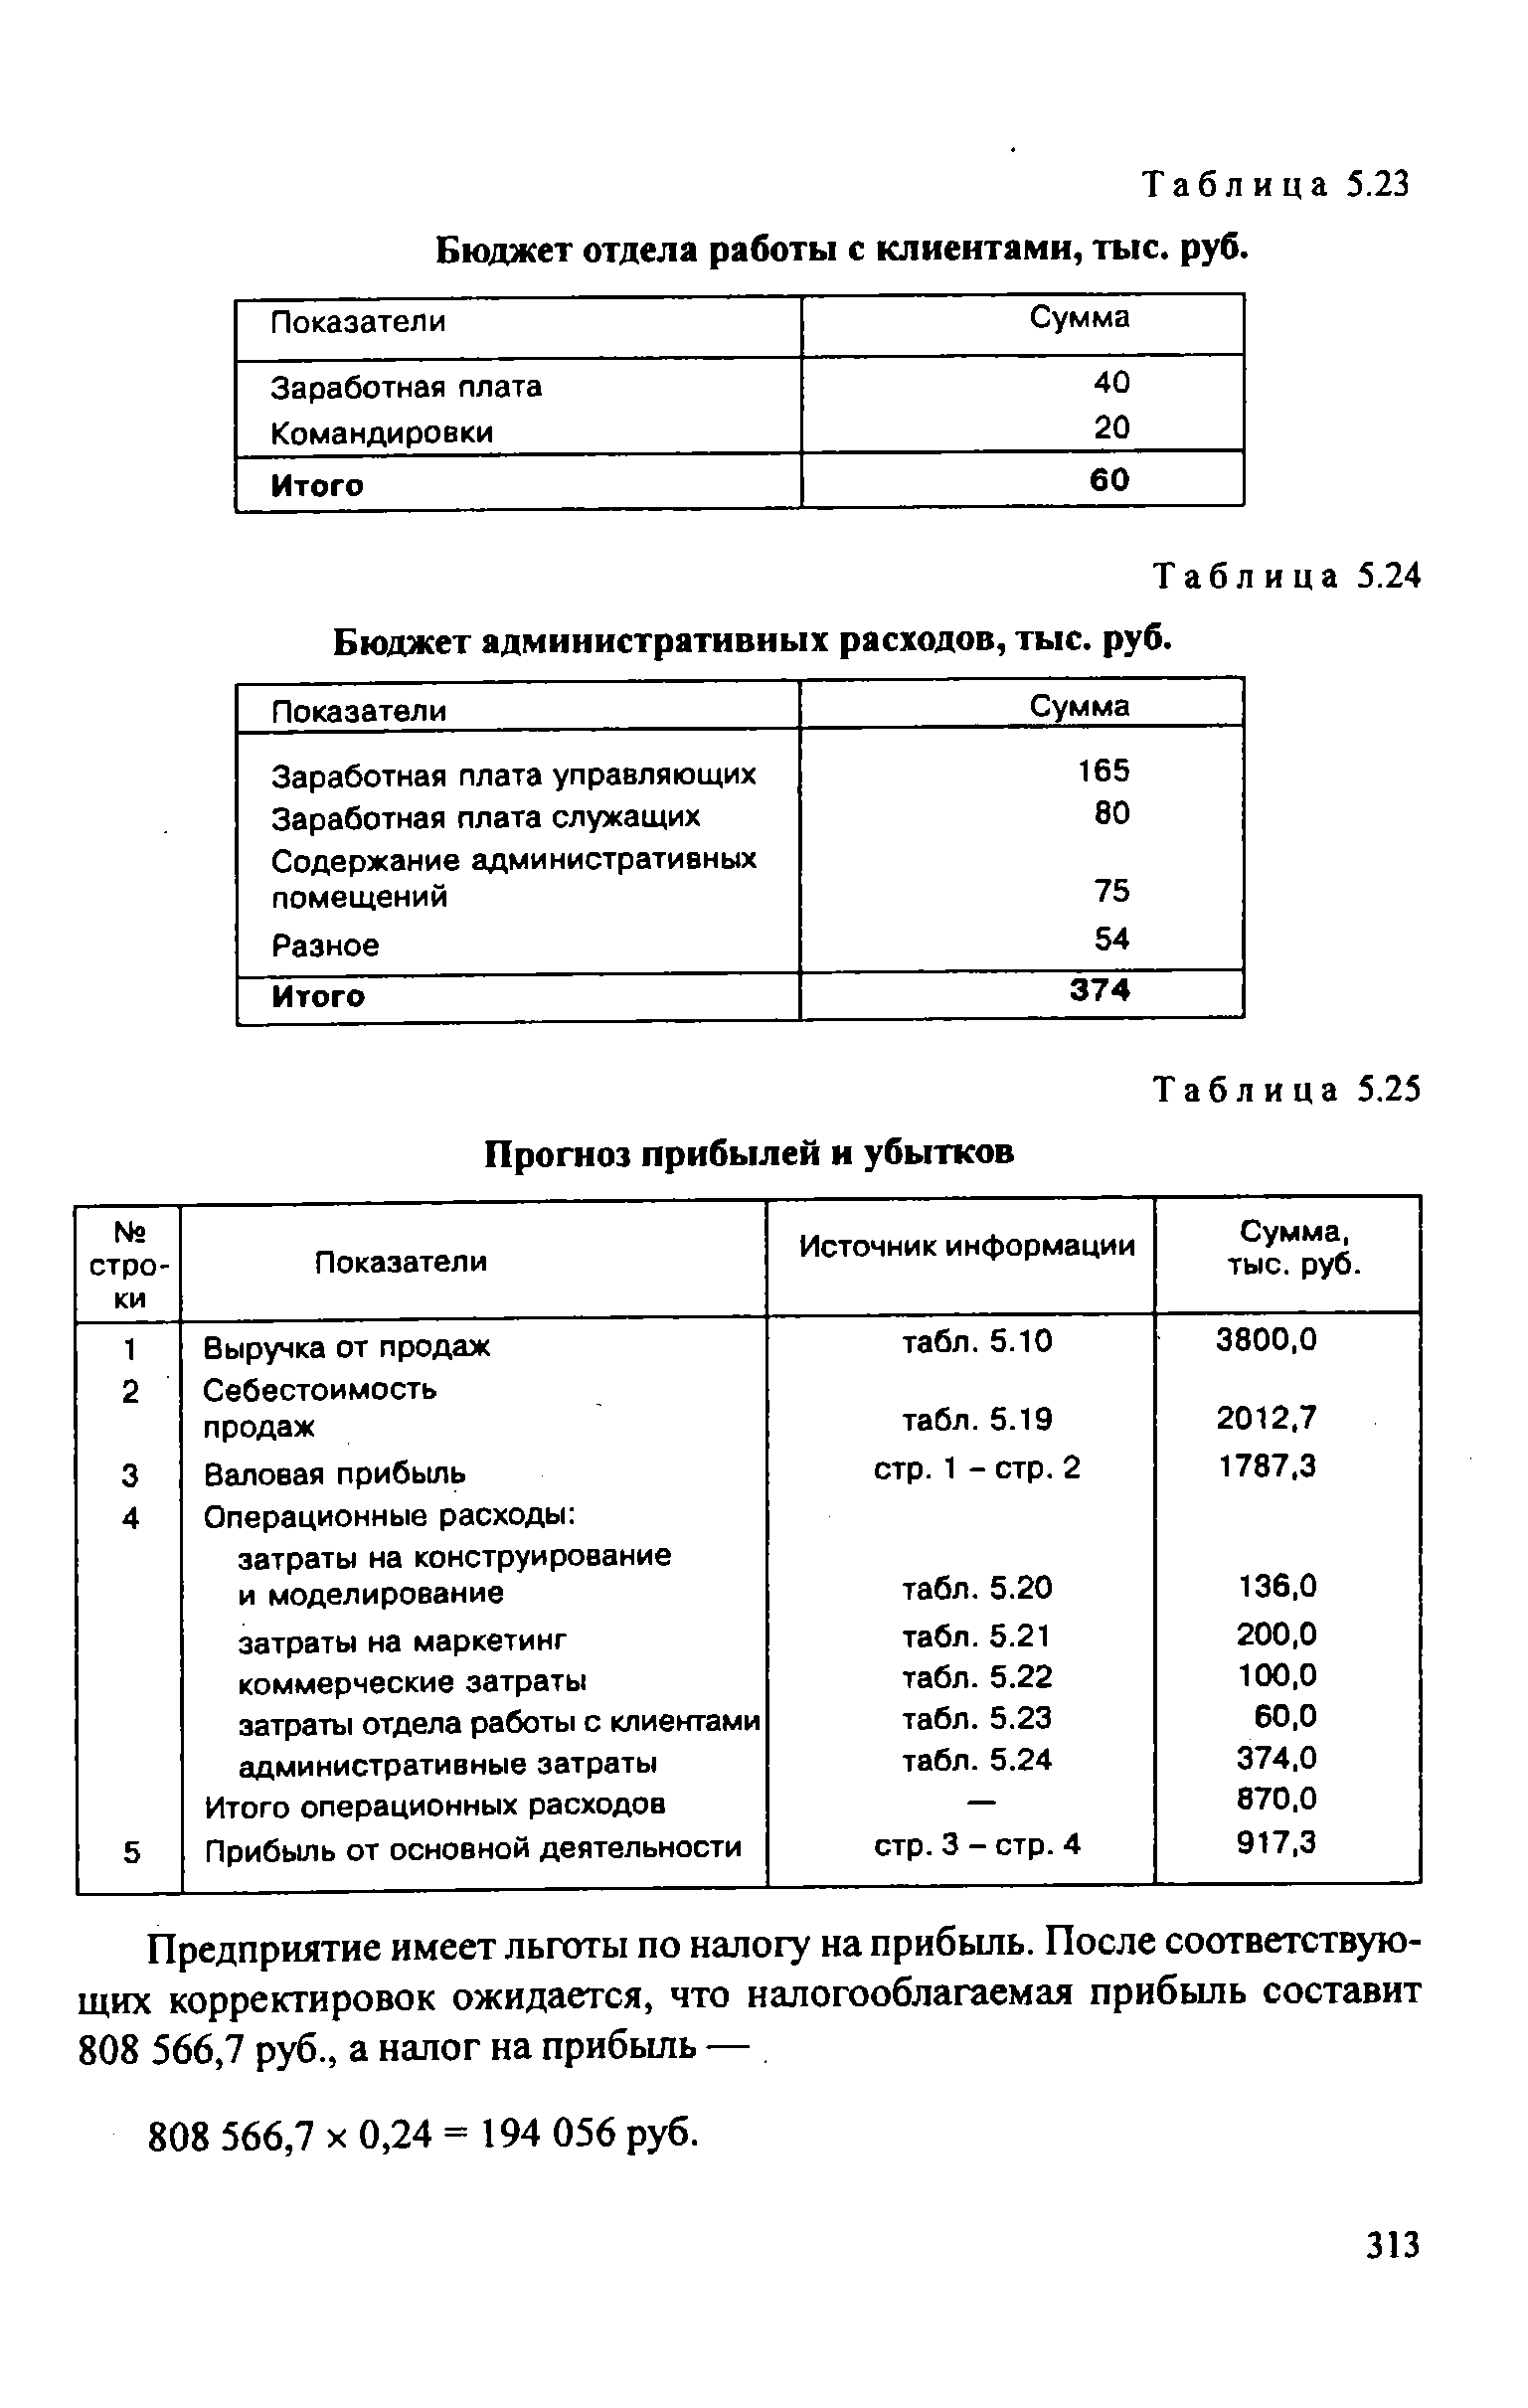 Таблица 5.24 Бюджет административных расходов, тыс. руб.
